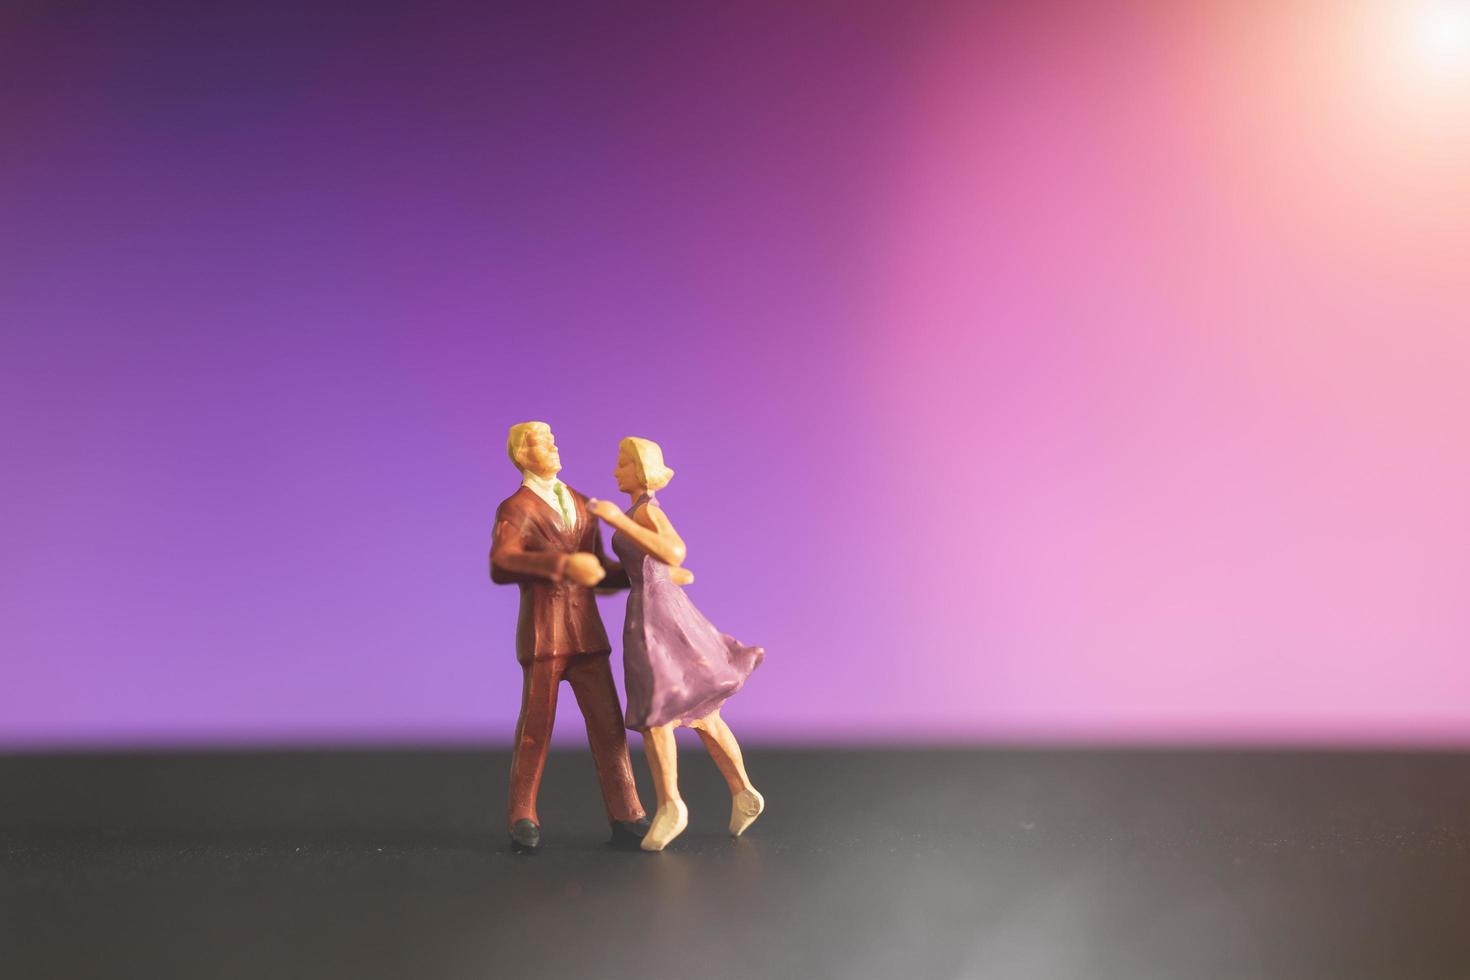 couple miniature dansant avec un fond coloré bokeh photo